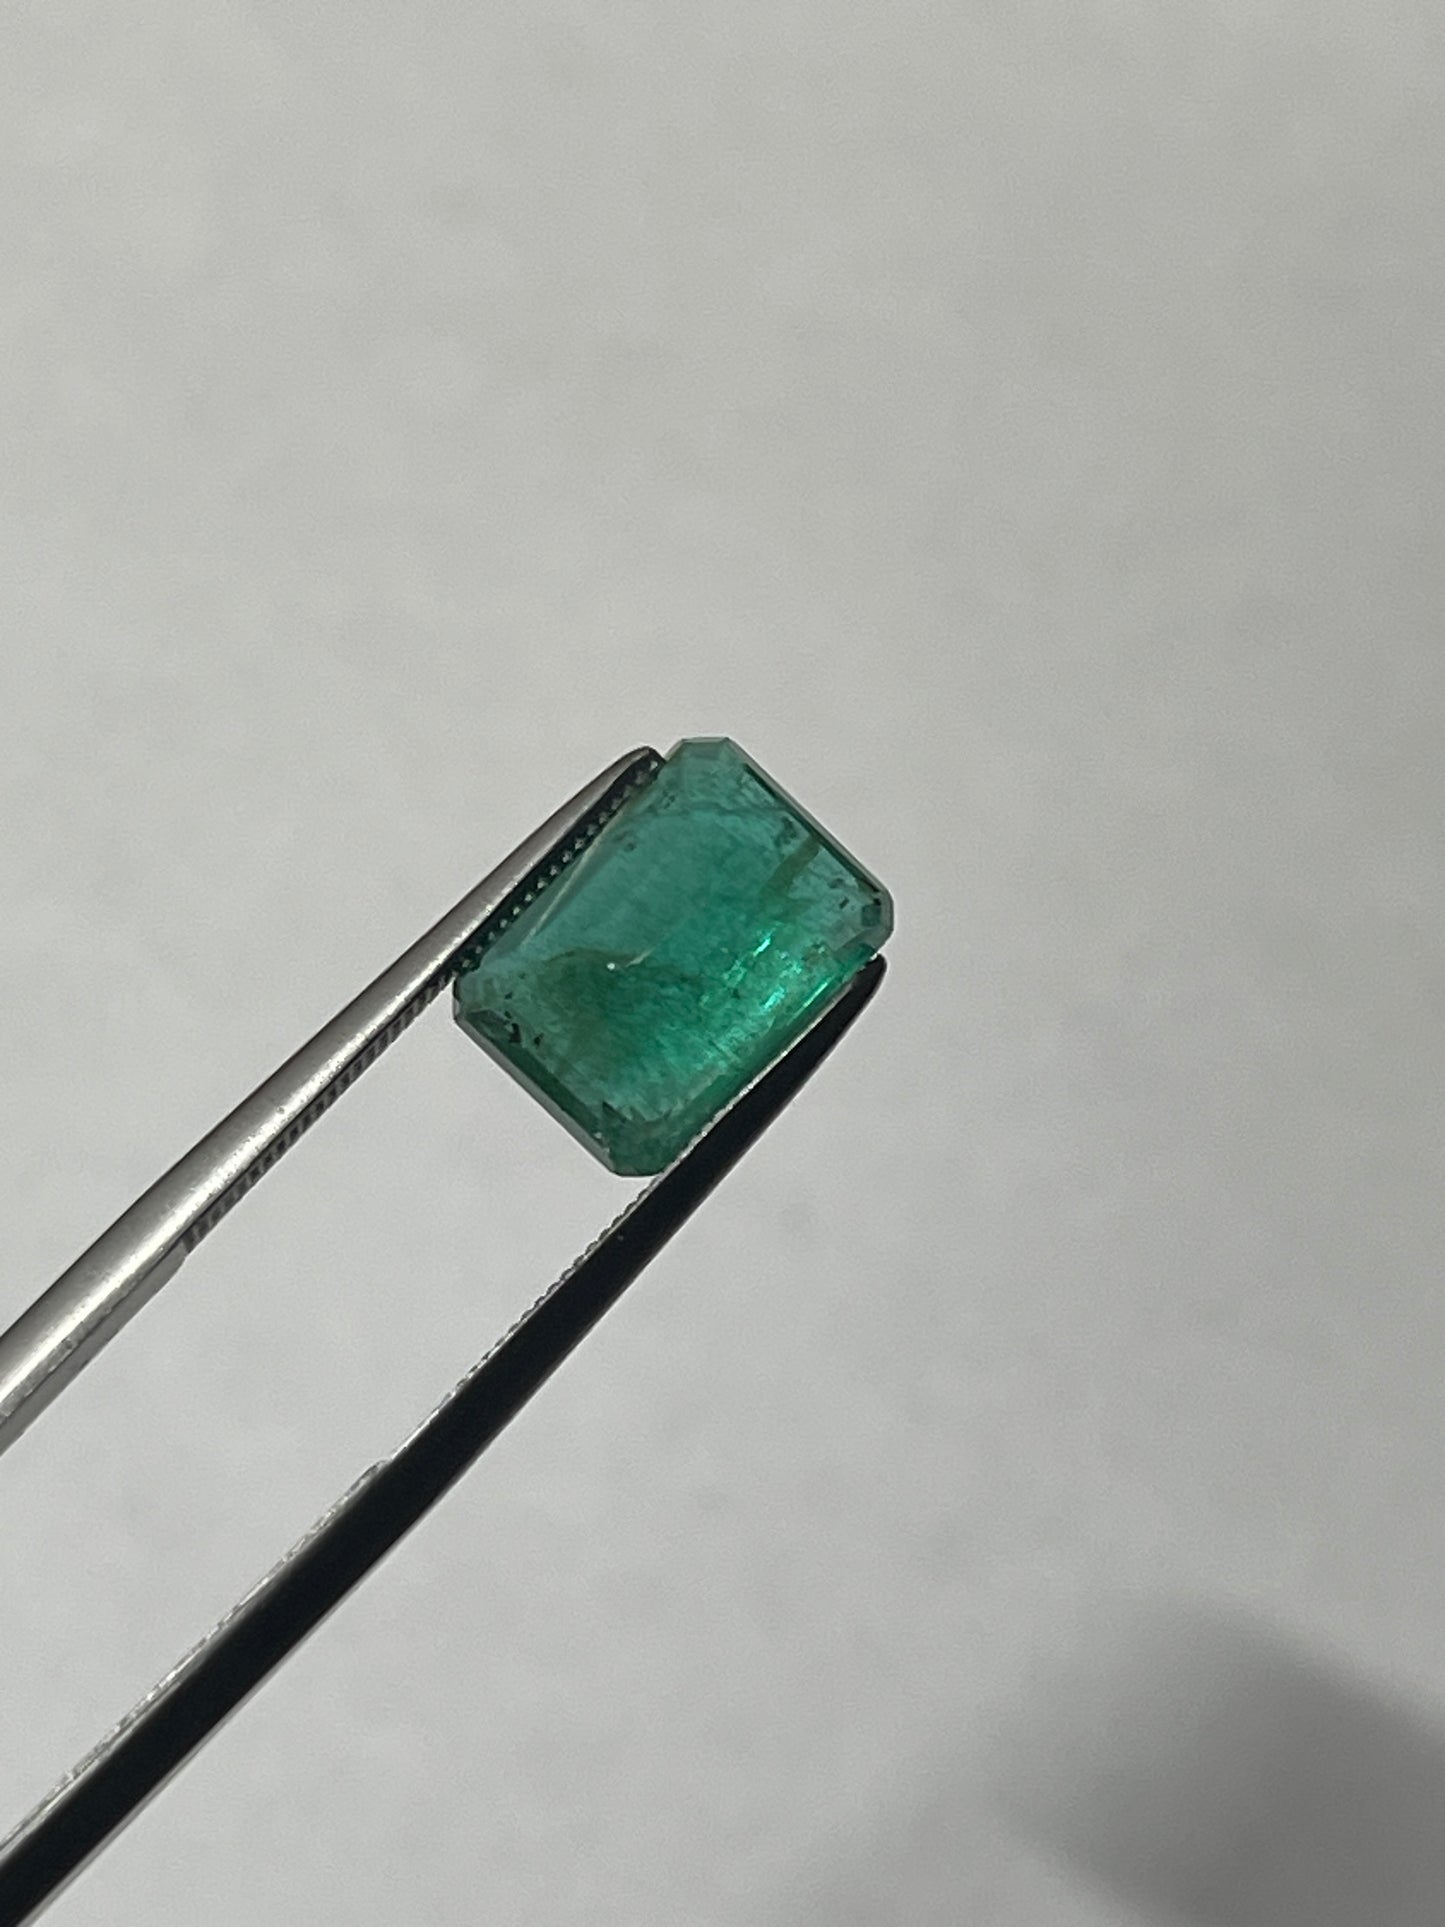 3.90ct Emerald with Minor Oil, Zambia